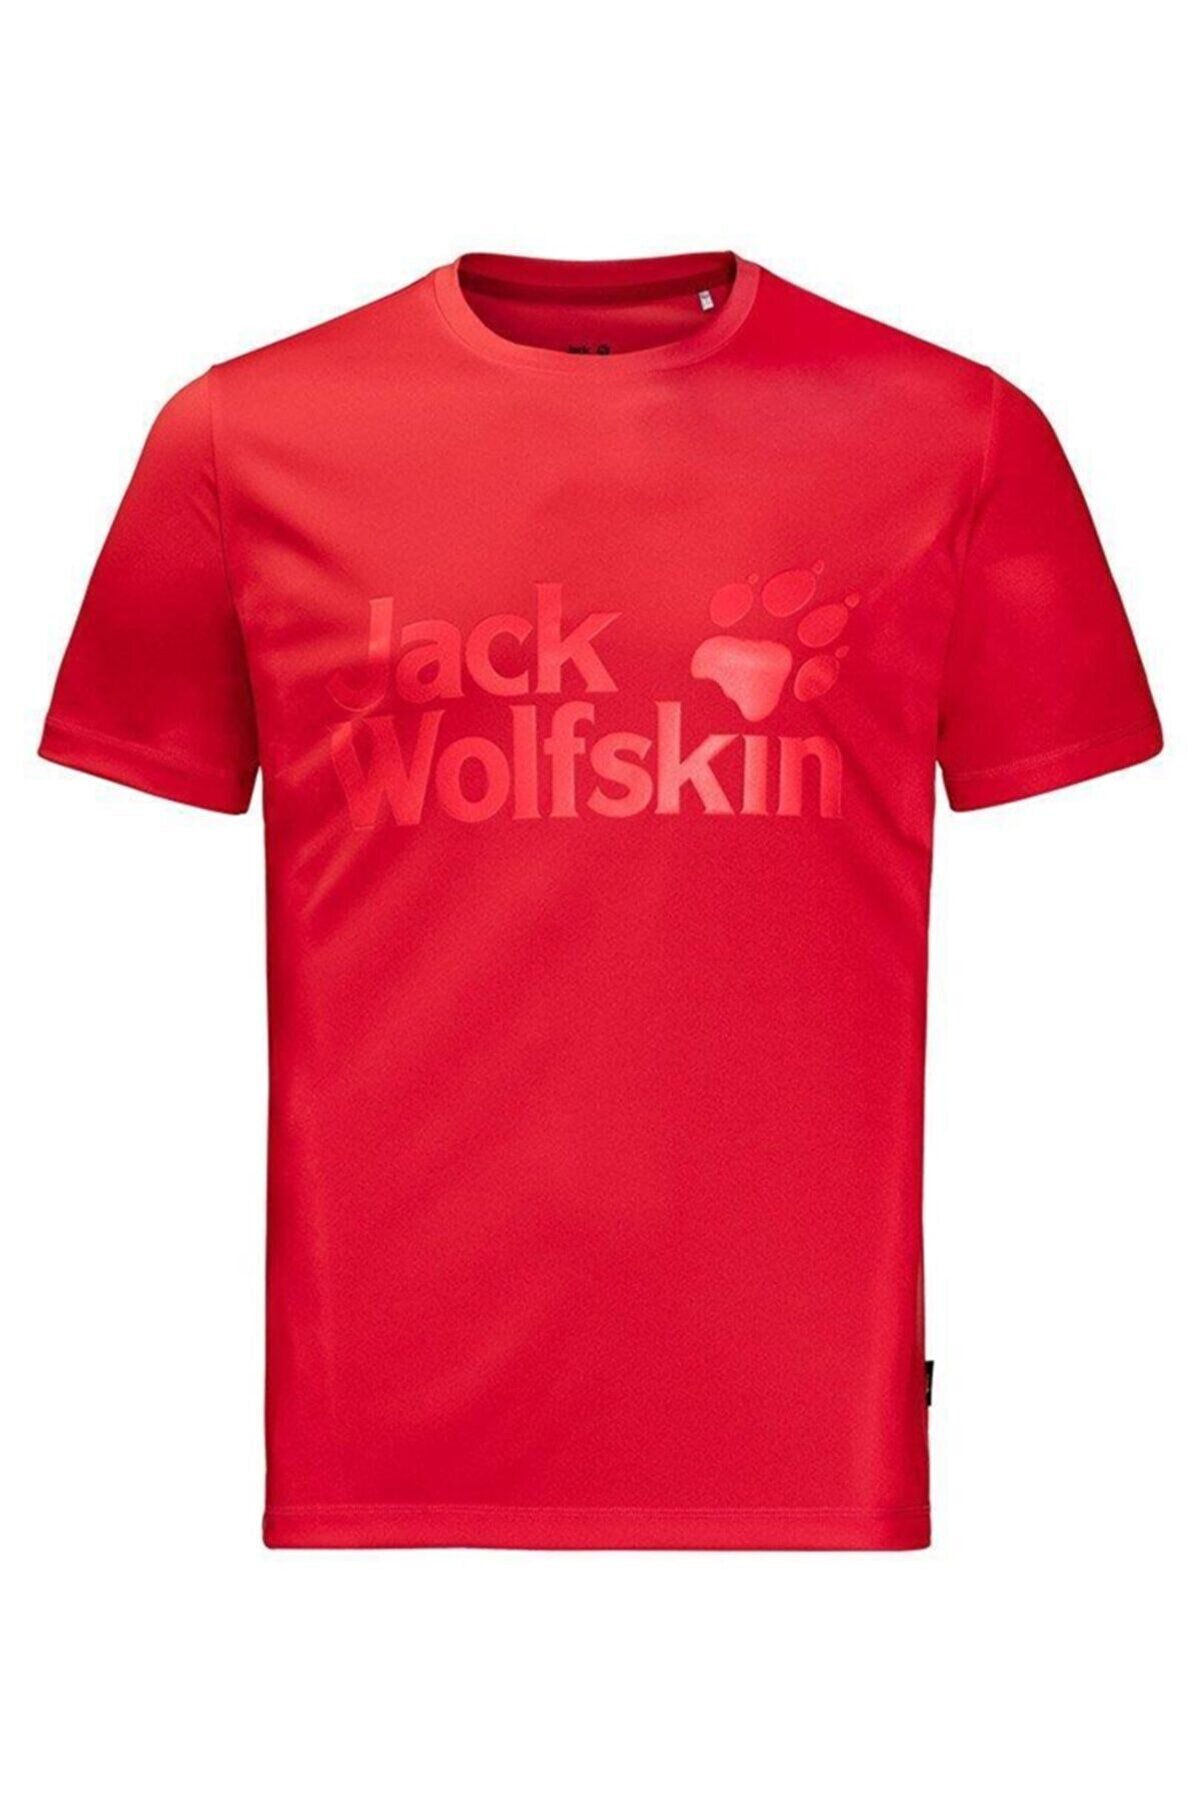 Jack Wolfskin Rock Chill Logo Erkek T-shirt - 1806171-2015